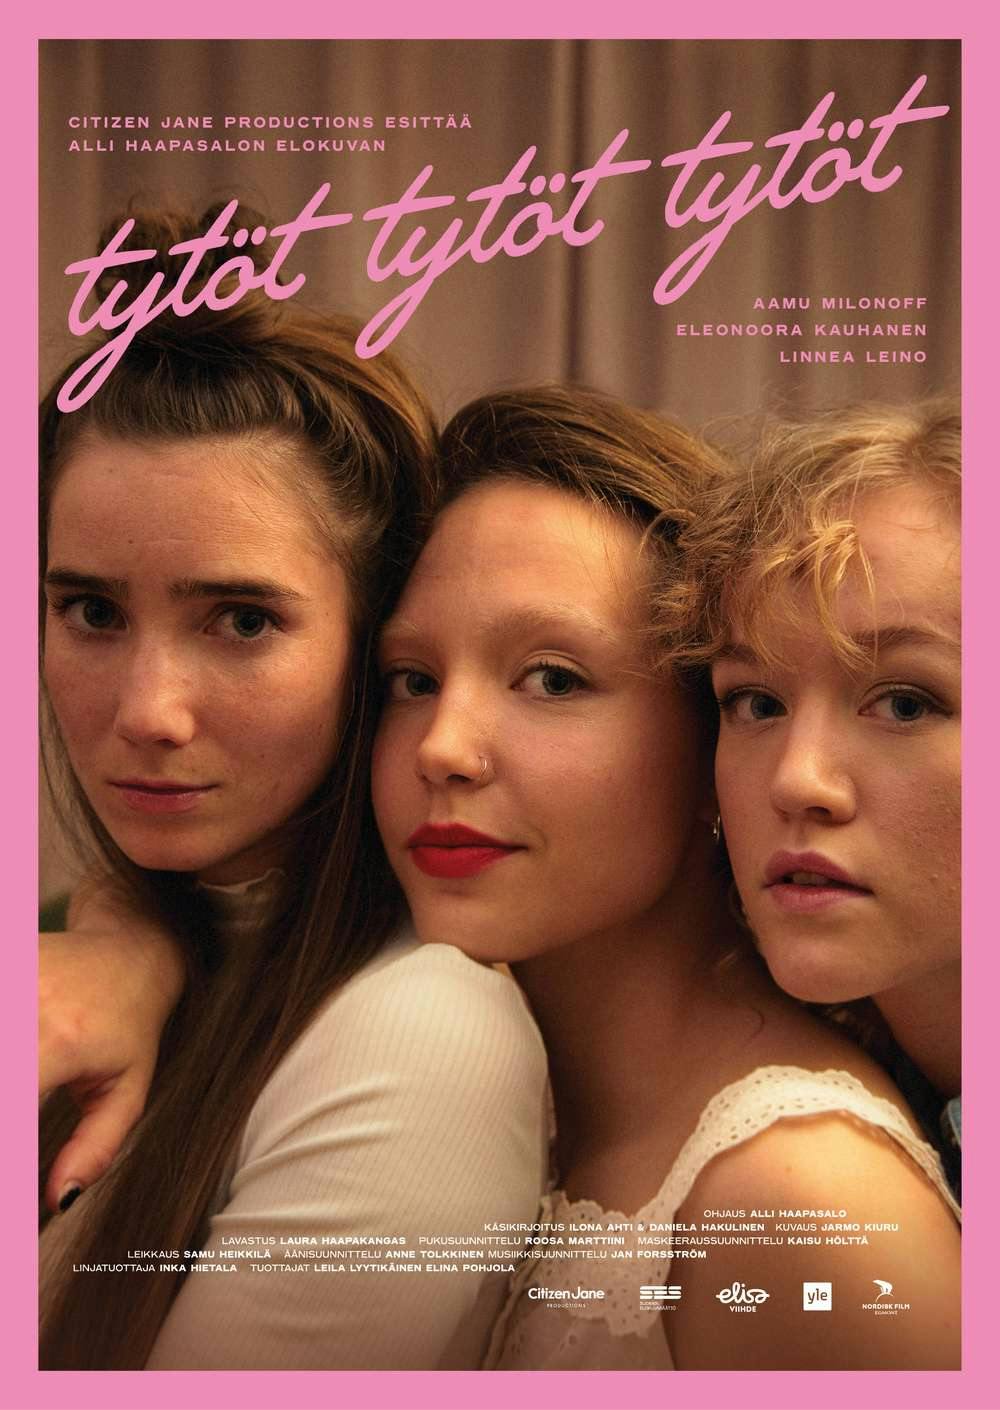 Tytöt tytöt tytöt -elokuva sisältää naurua, mokia ja romantiikkaa